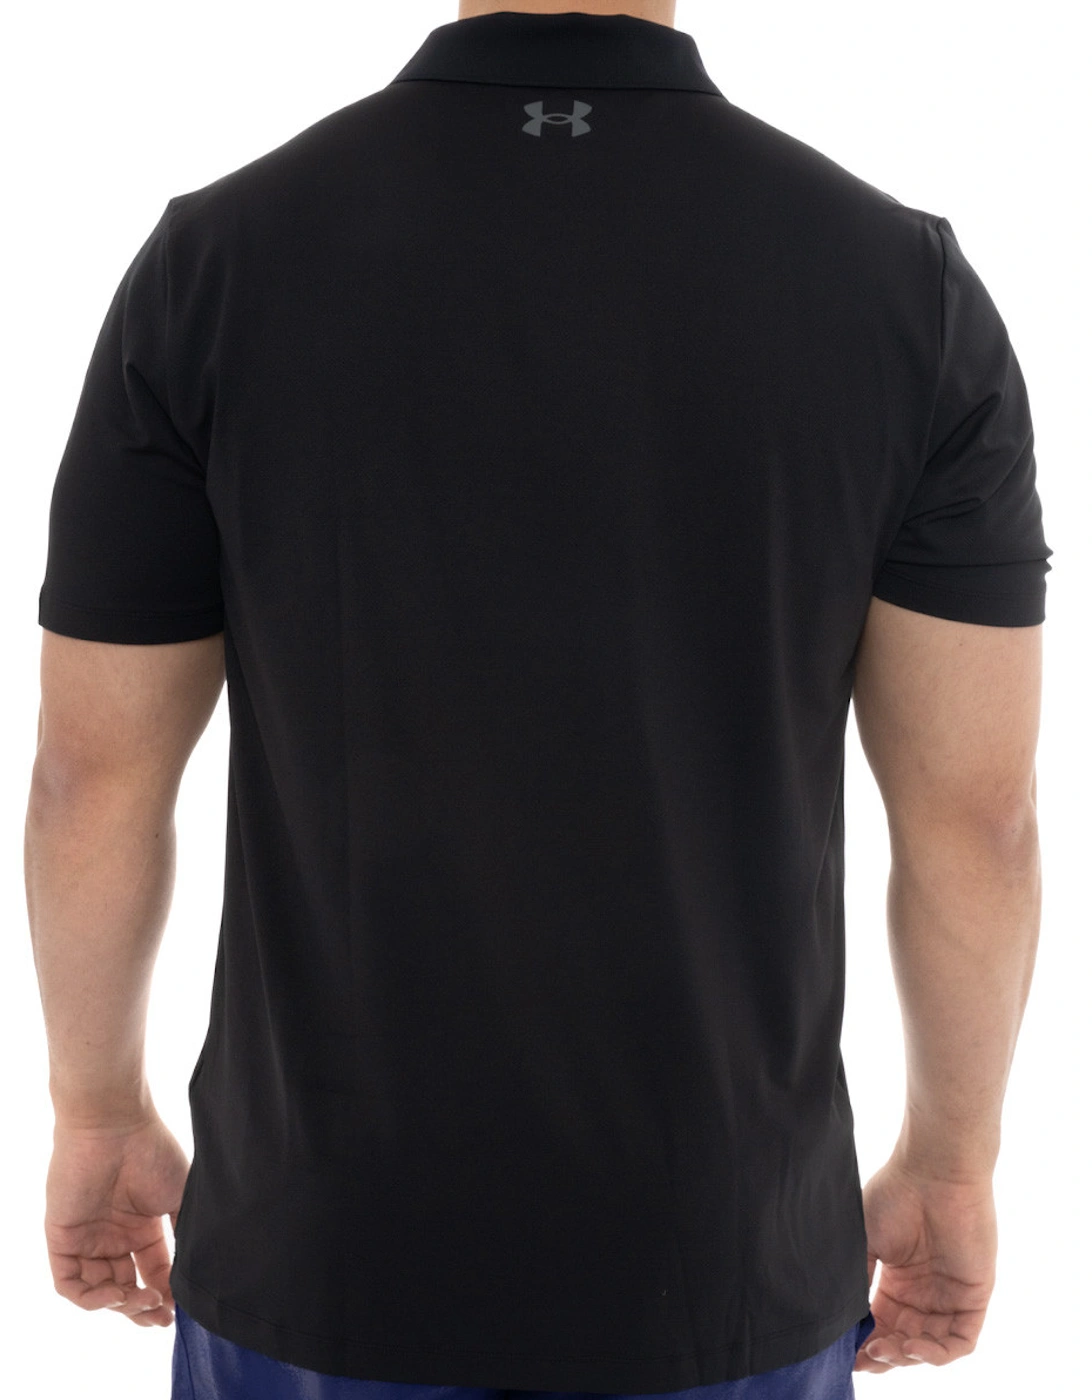 Mens Performance Polo Shirt (Black)